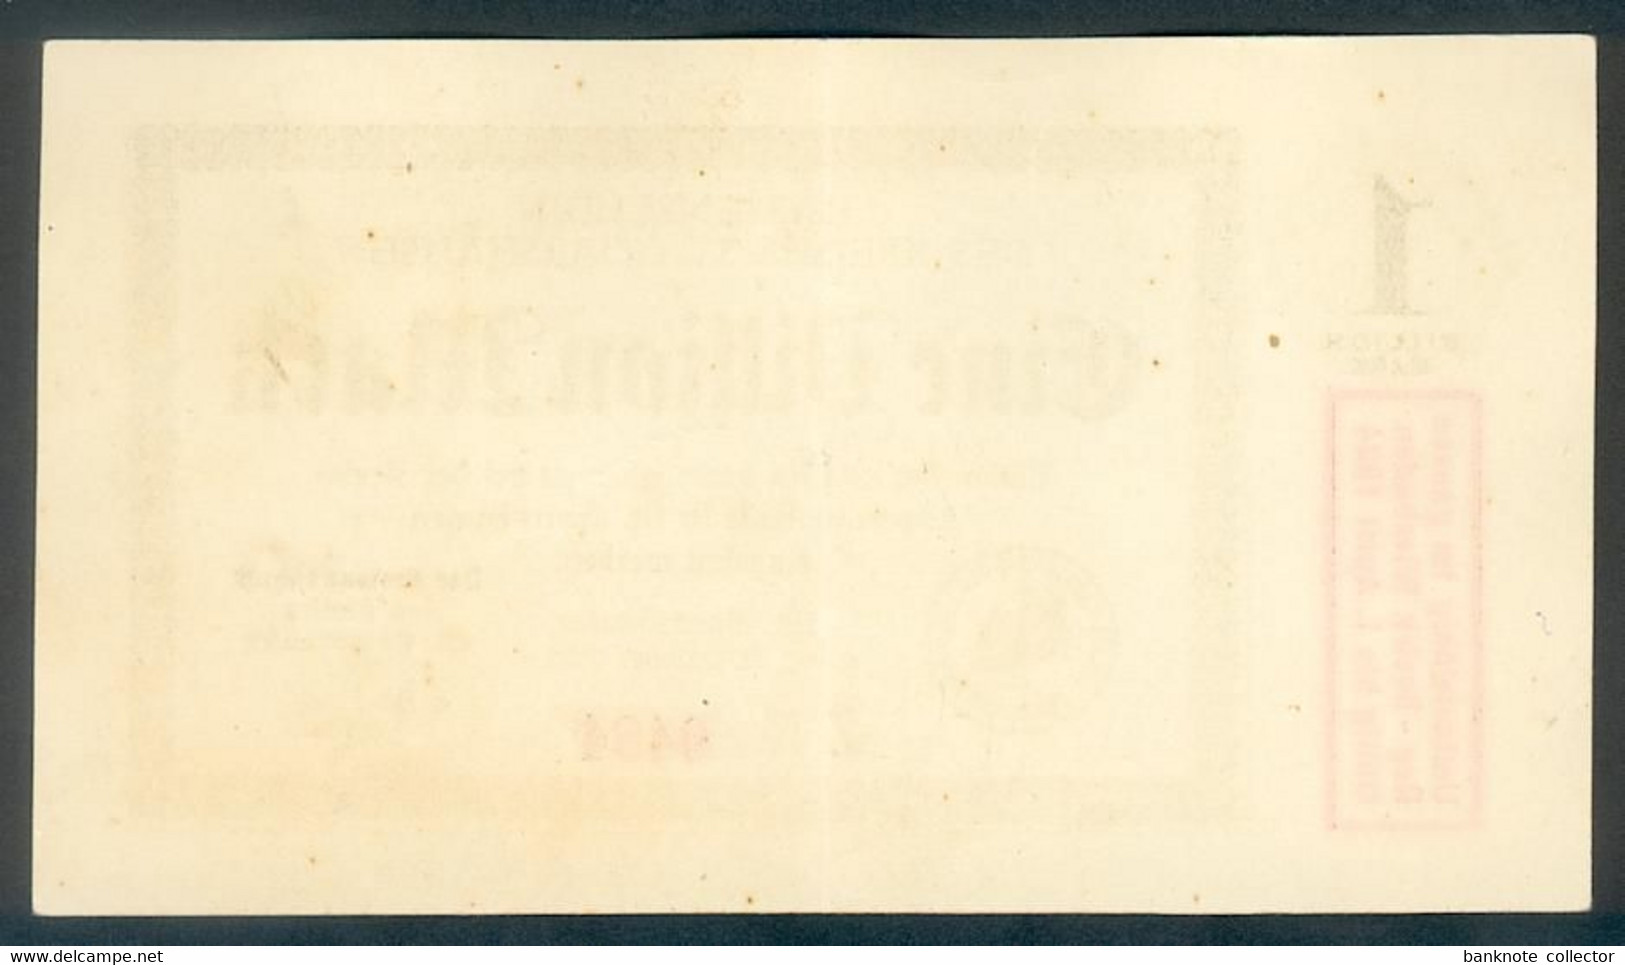 Deutschland, Germany, St. Goarshausen - 1 Billion Mark, 1923 ! - 1 Biljoen Mark